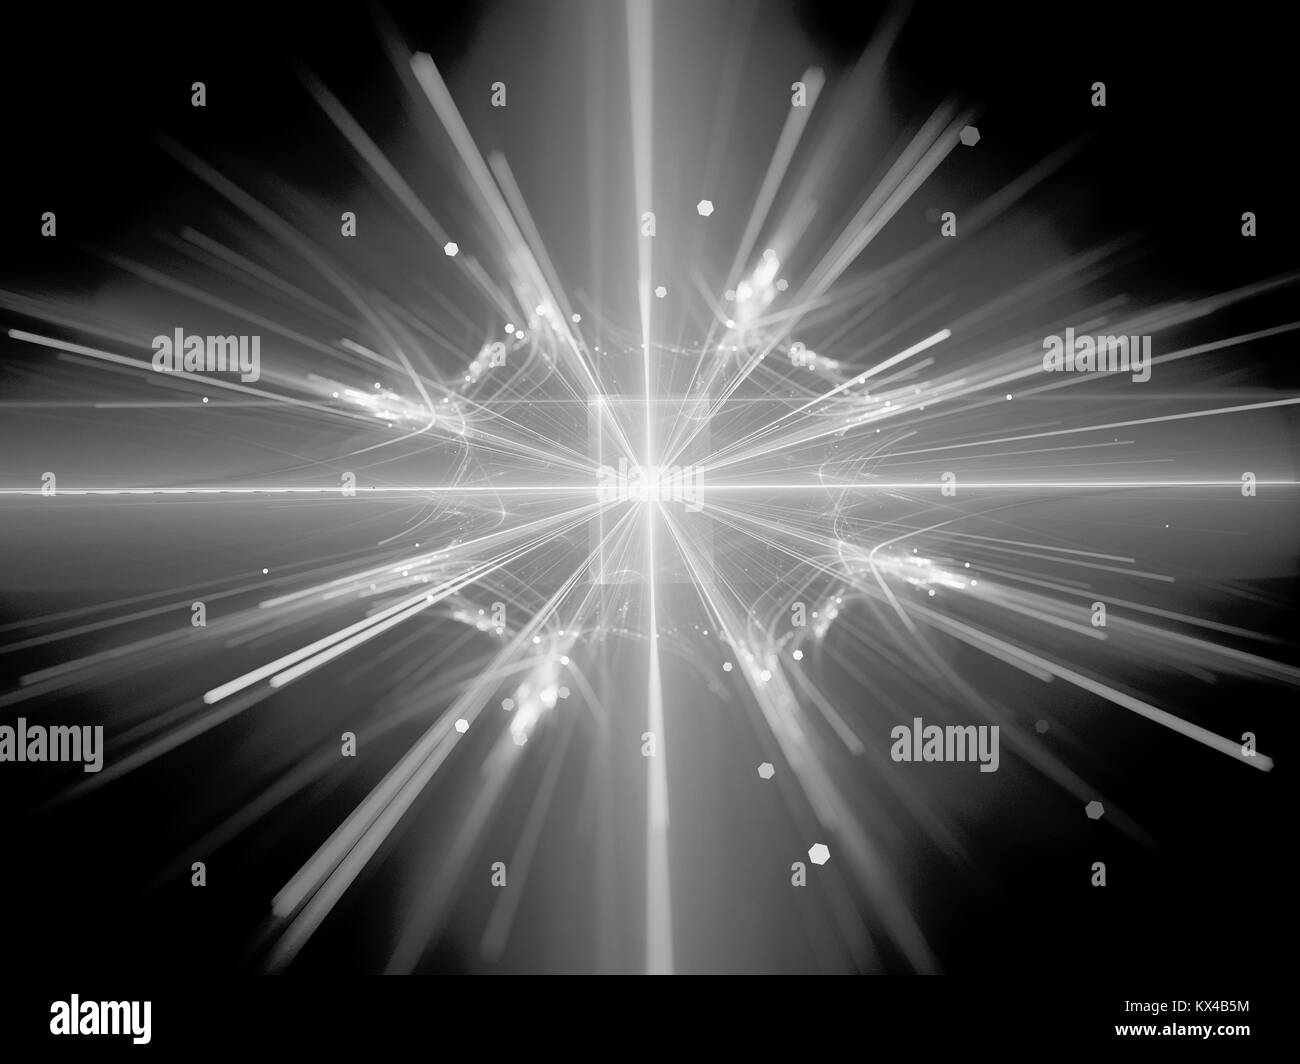 Kernspaltung in Large Hadron Collider schwarze und weiße Textur, computer-generierte Zusammenfassung Hintergrund, 3D-Rendering Stockfoto